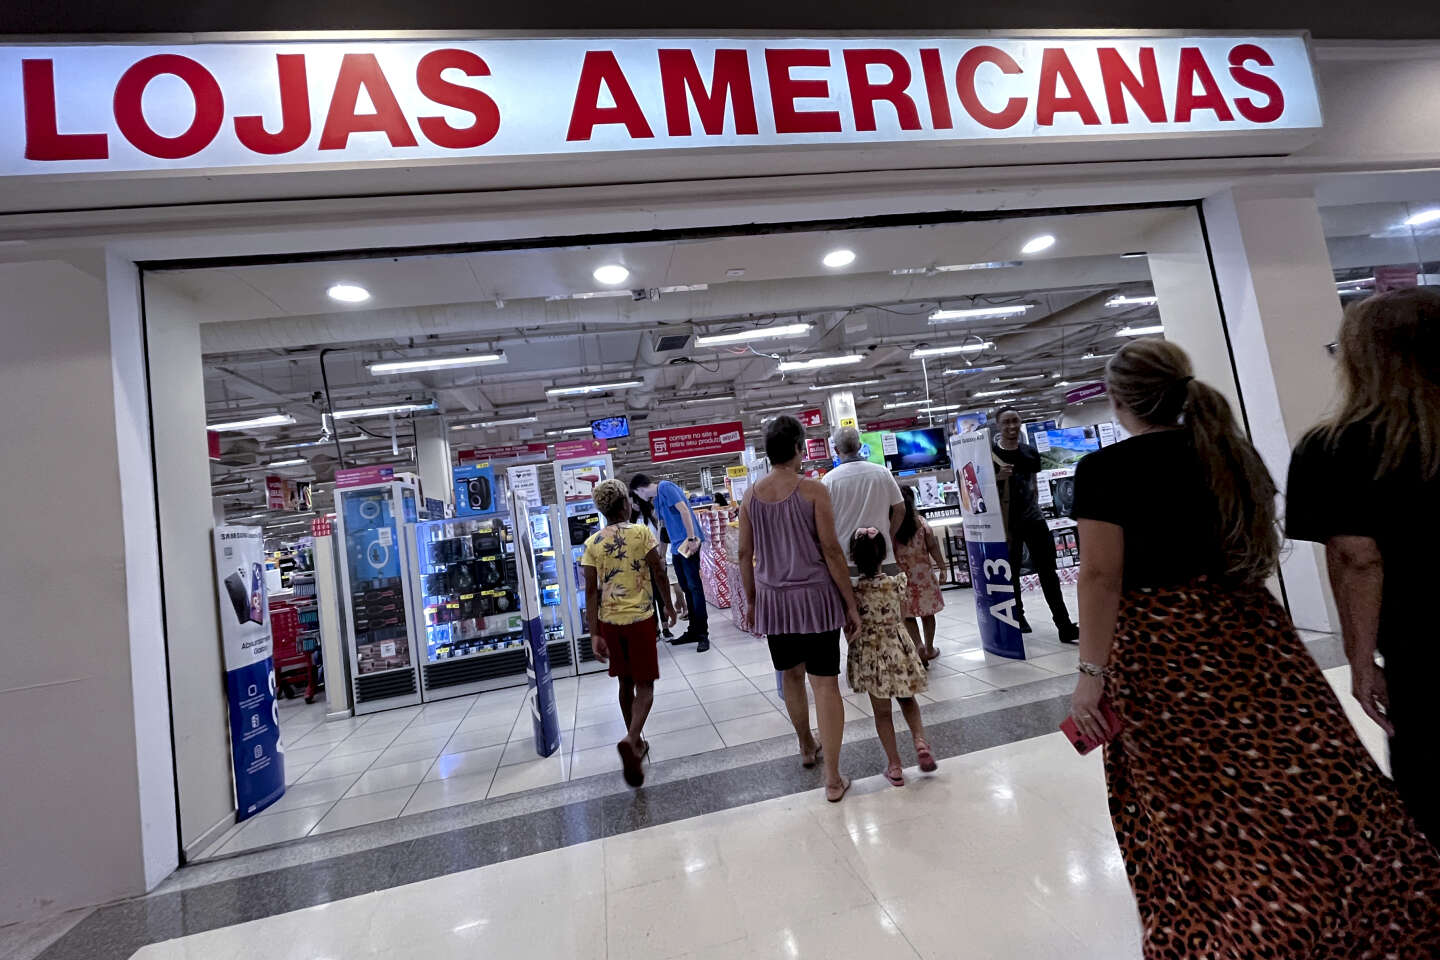 No Brasil, lojas de departamentos americanas estão no centro de um escândalo financeiro